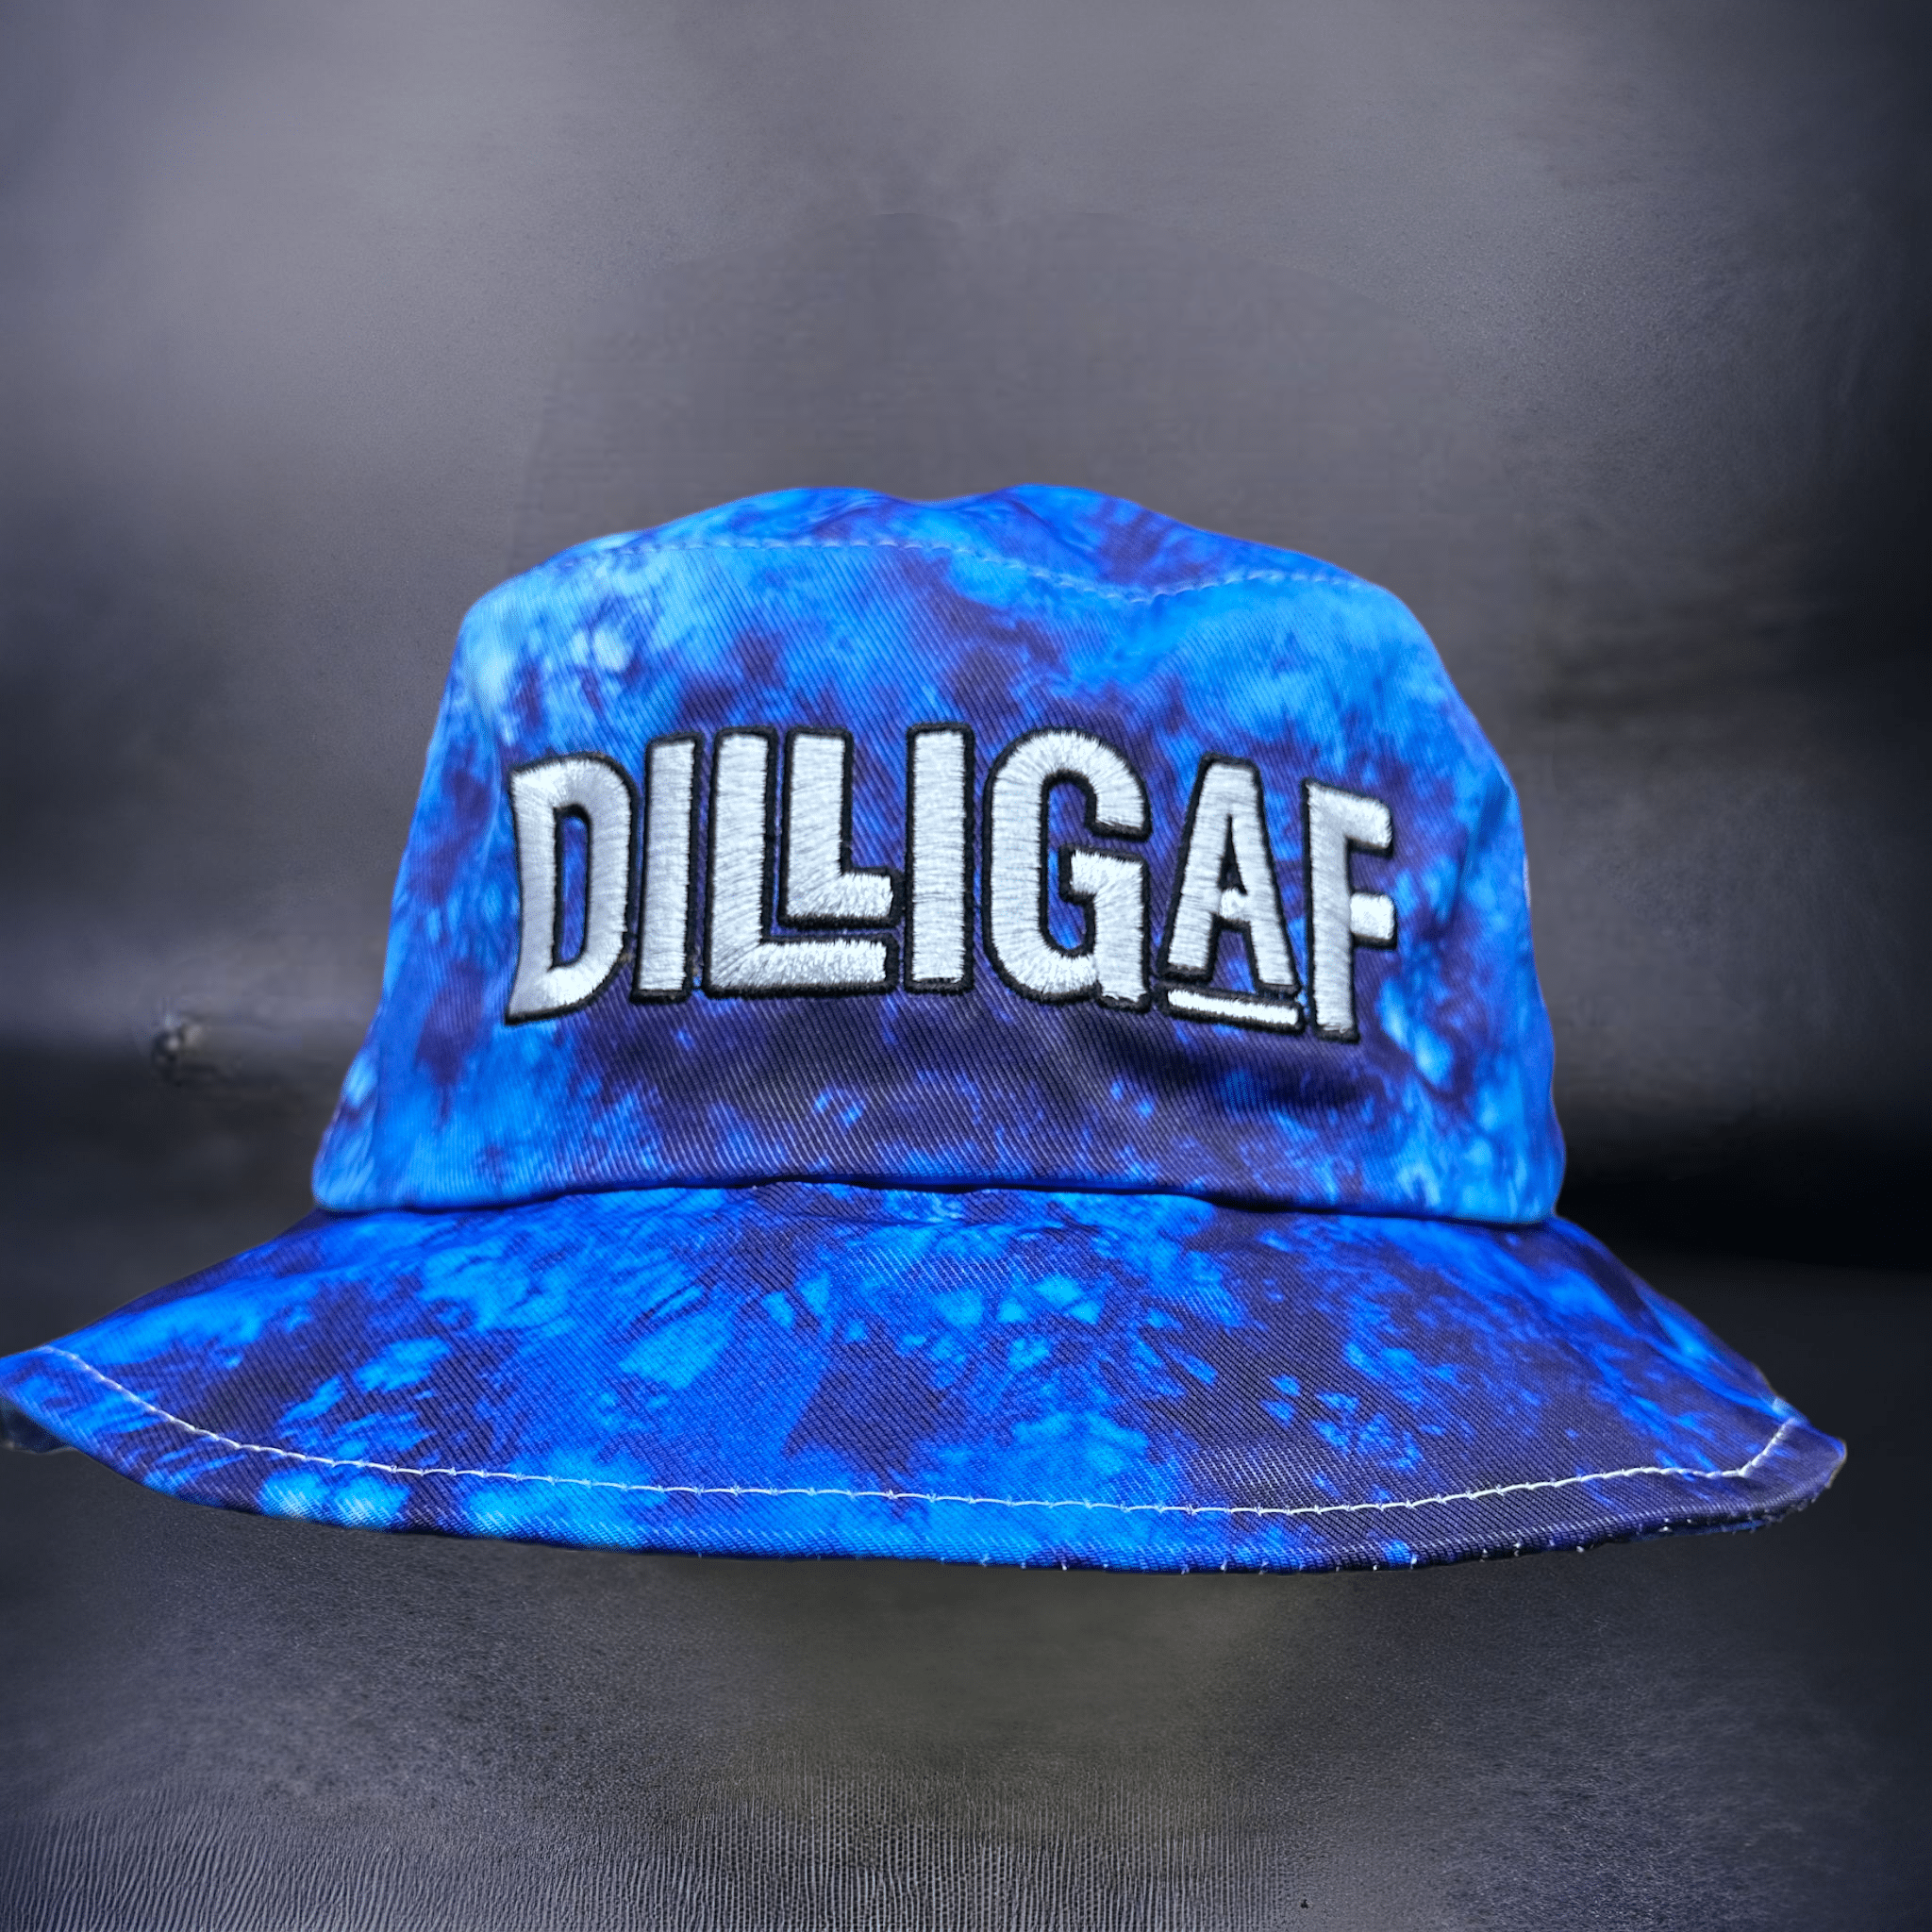 Royal Blue Dilligaf Bucket Hat – Dilligaf by Bohica Bill